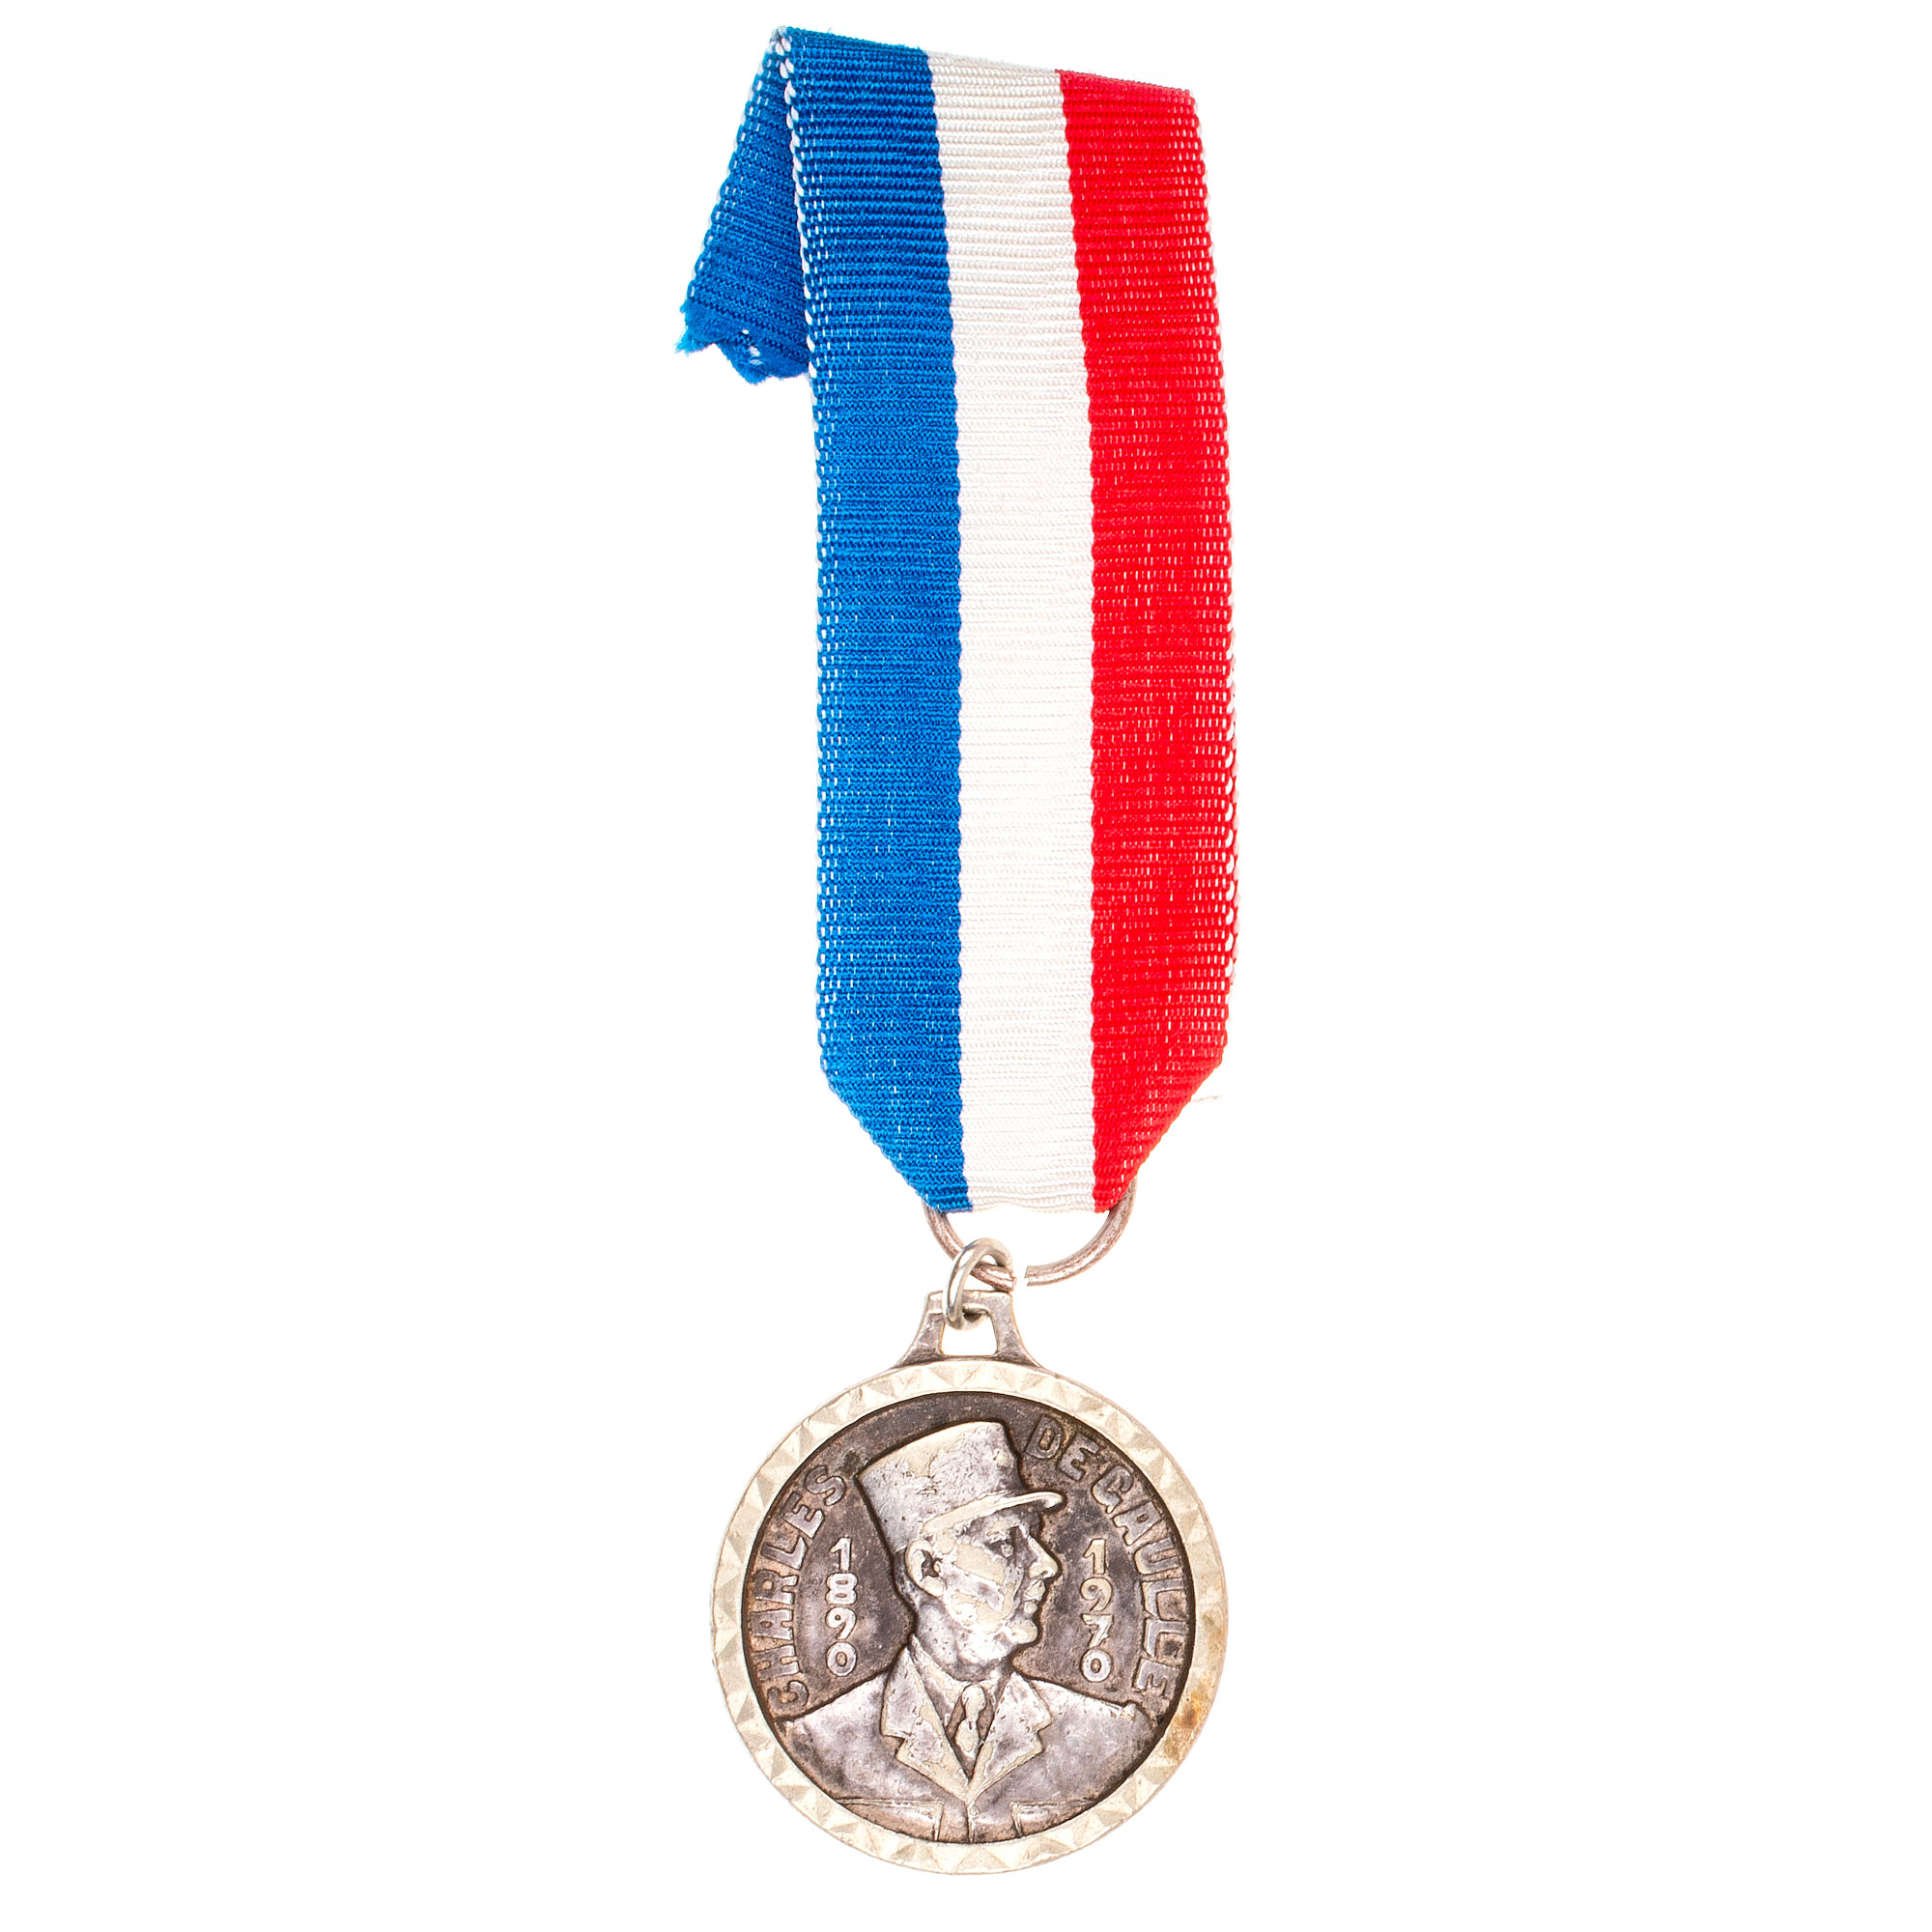 Франция. Медаль Шарль де Голь 1890 - 1970 гг.